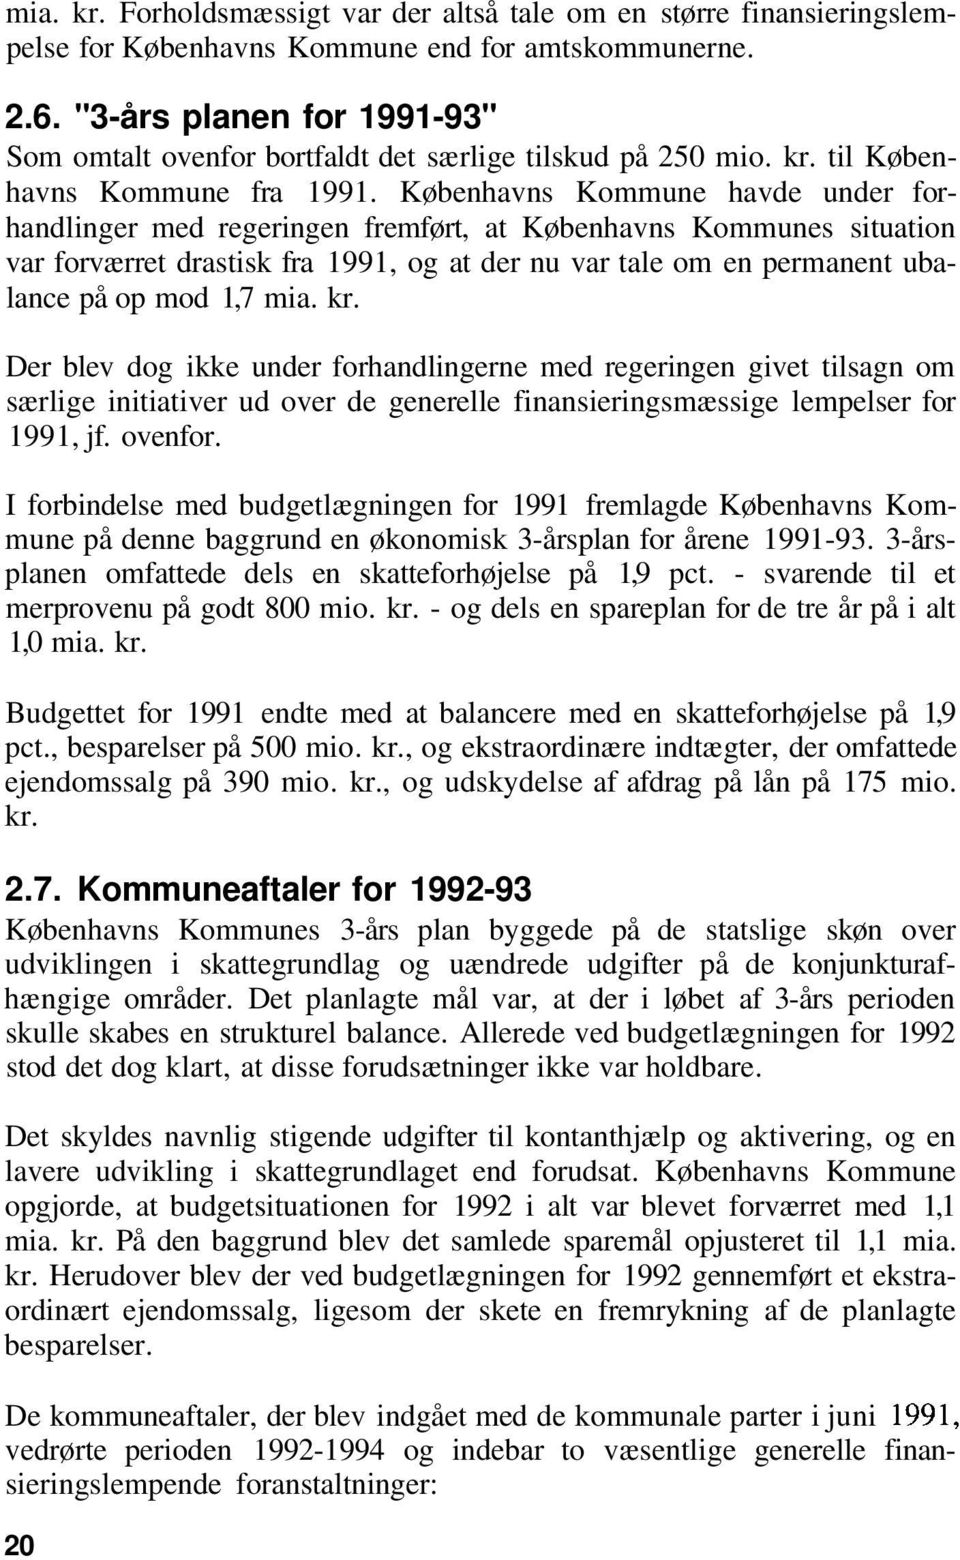 Københavns Kommune havde under forhandlinger med regeringen fremført, at Københavns Kommunes situation var forværret drastisk fra 1991, og at der nu var tale om en permanent ubalance på op mod 1,7